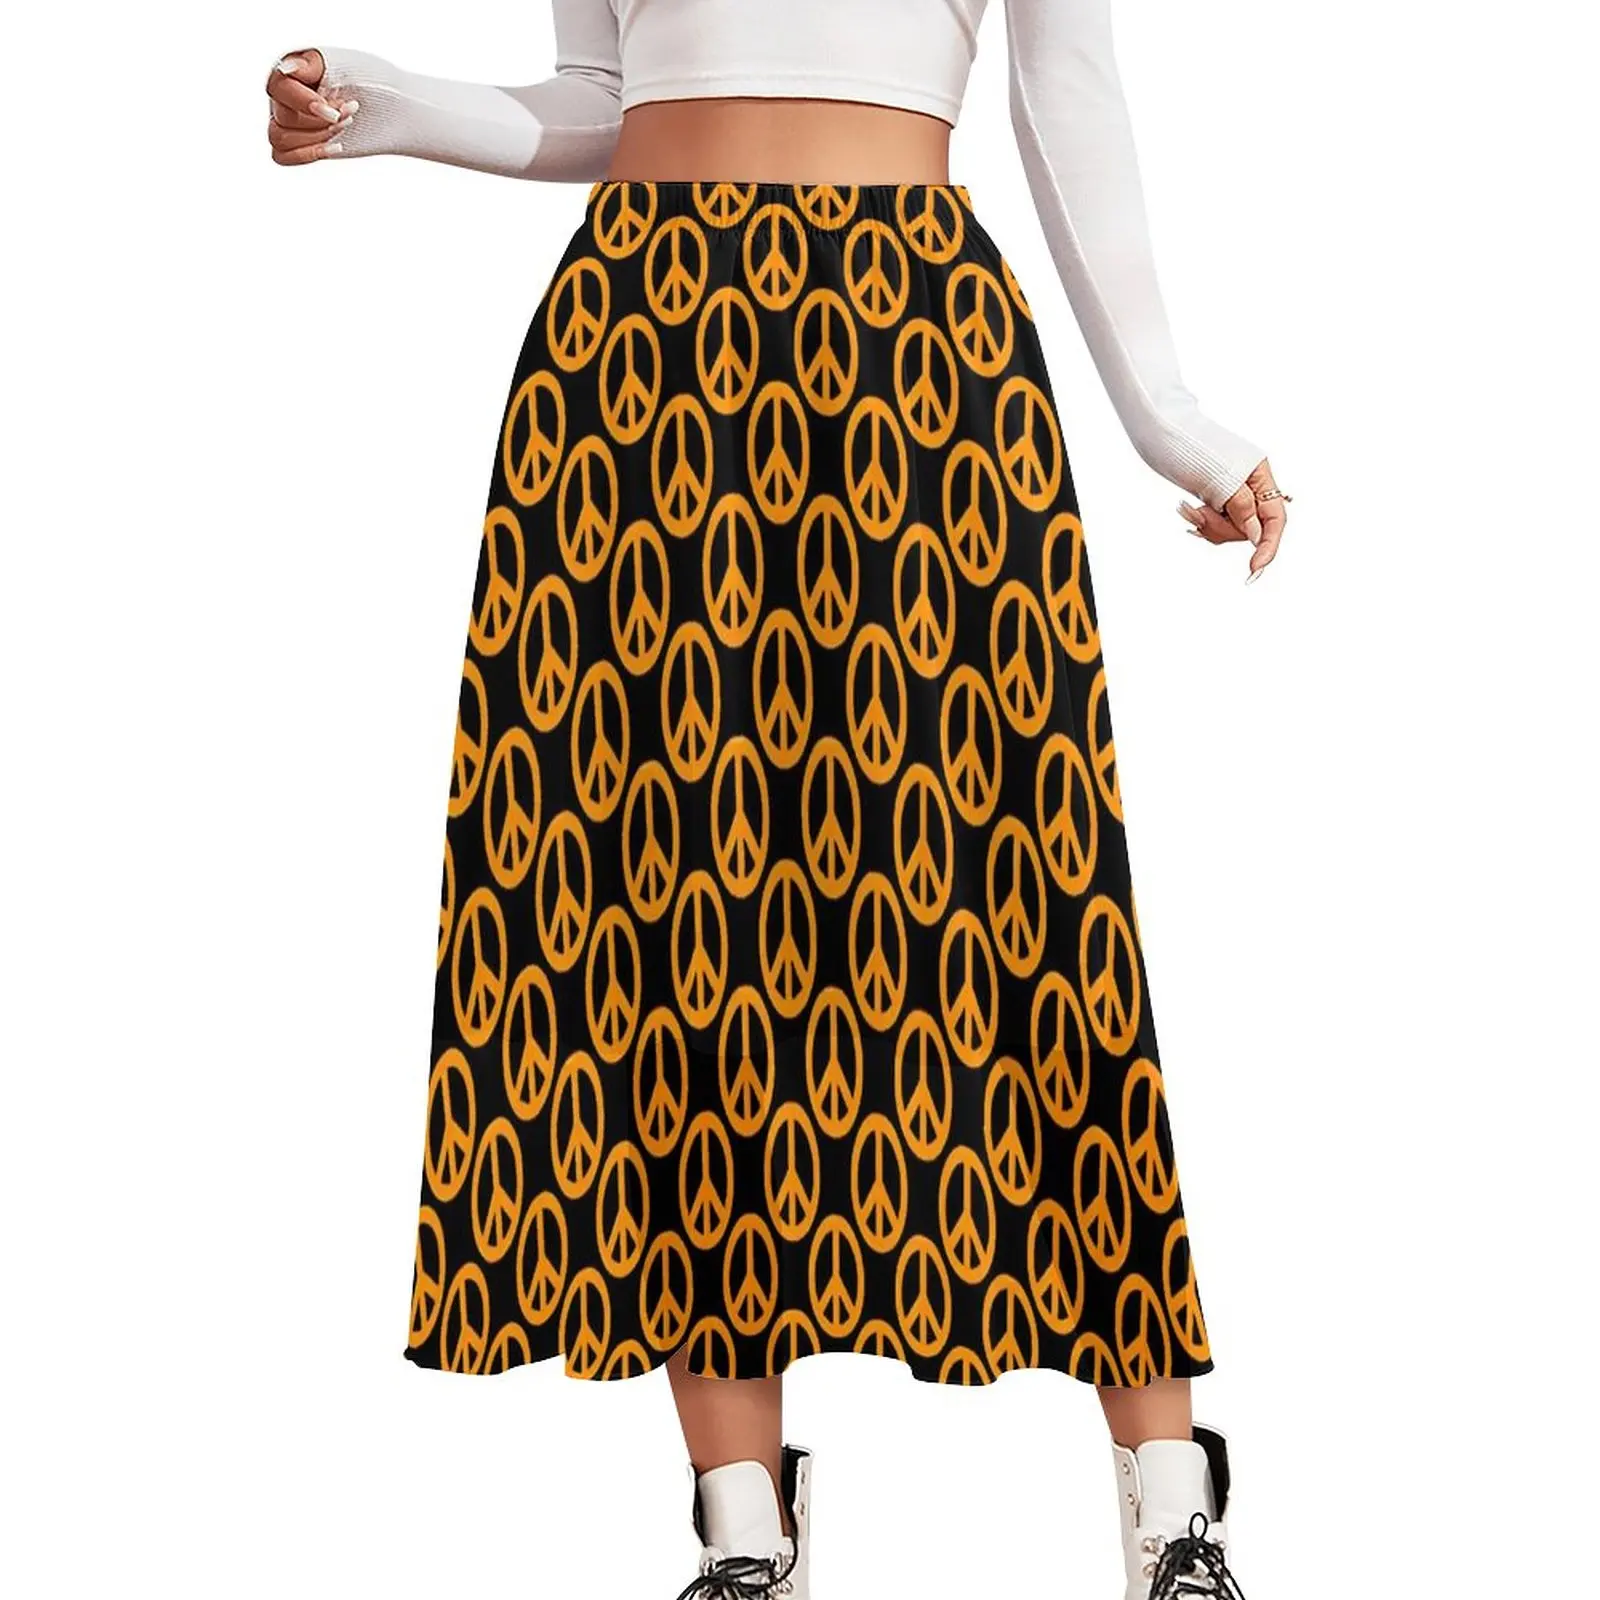 

Оранжевая юбка с надписью Peace, современные длинные юбки с винтажным принтом, летняя уличная одежда, шифоновая повседневная юбка большого размера с эластичным поясом на заказ